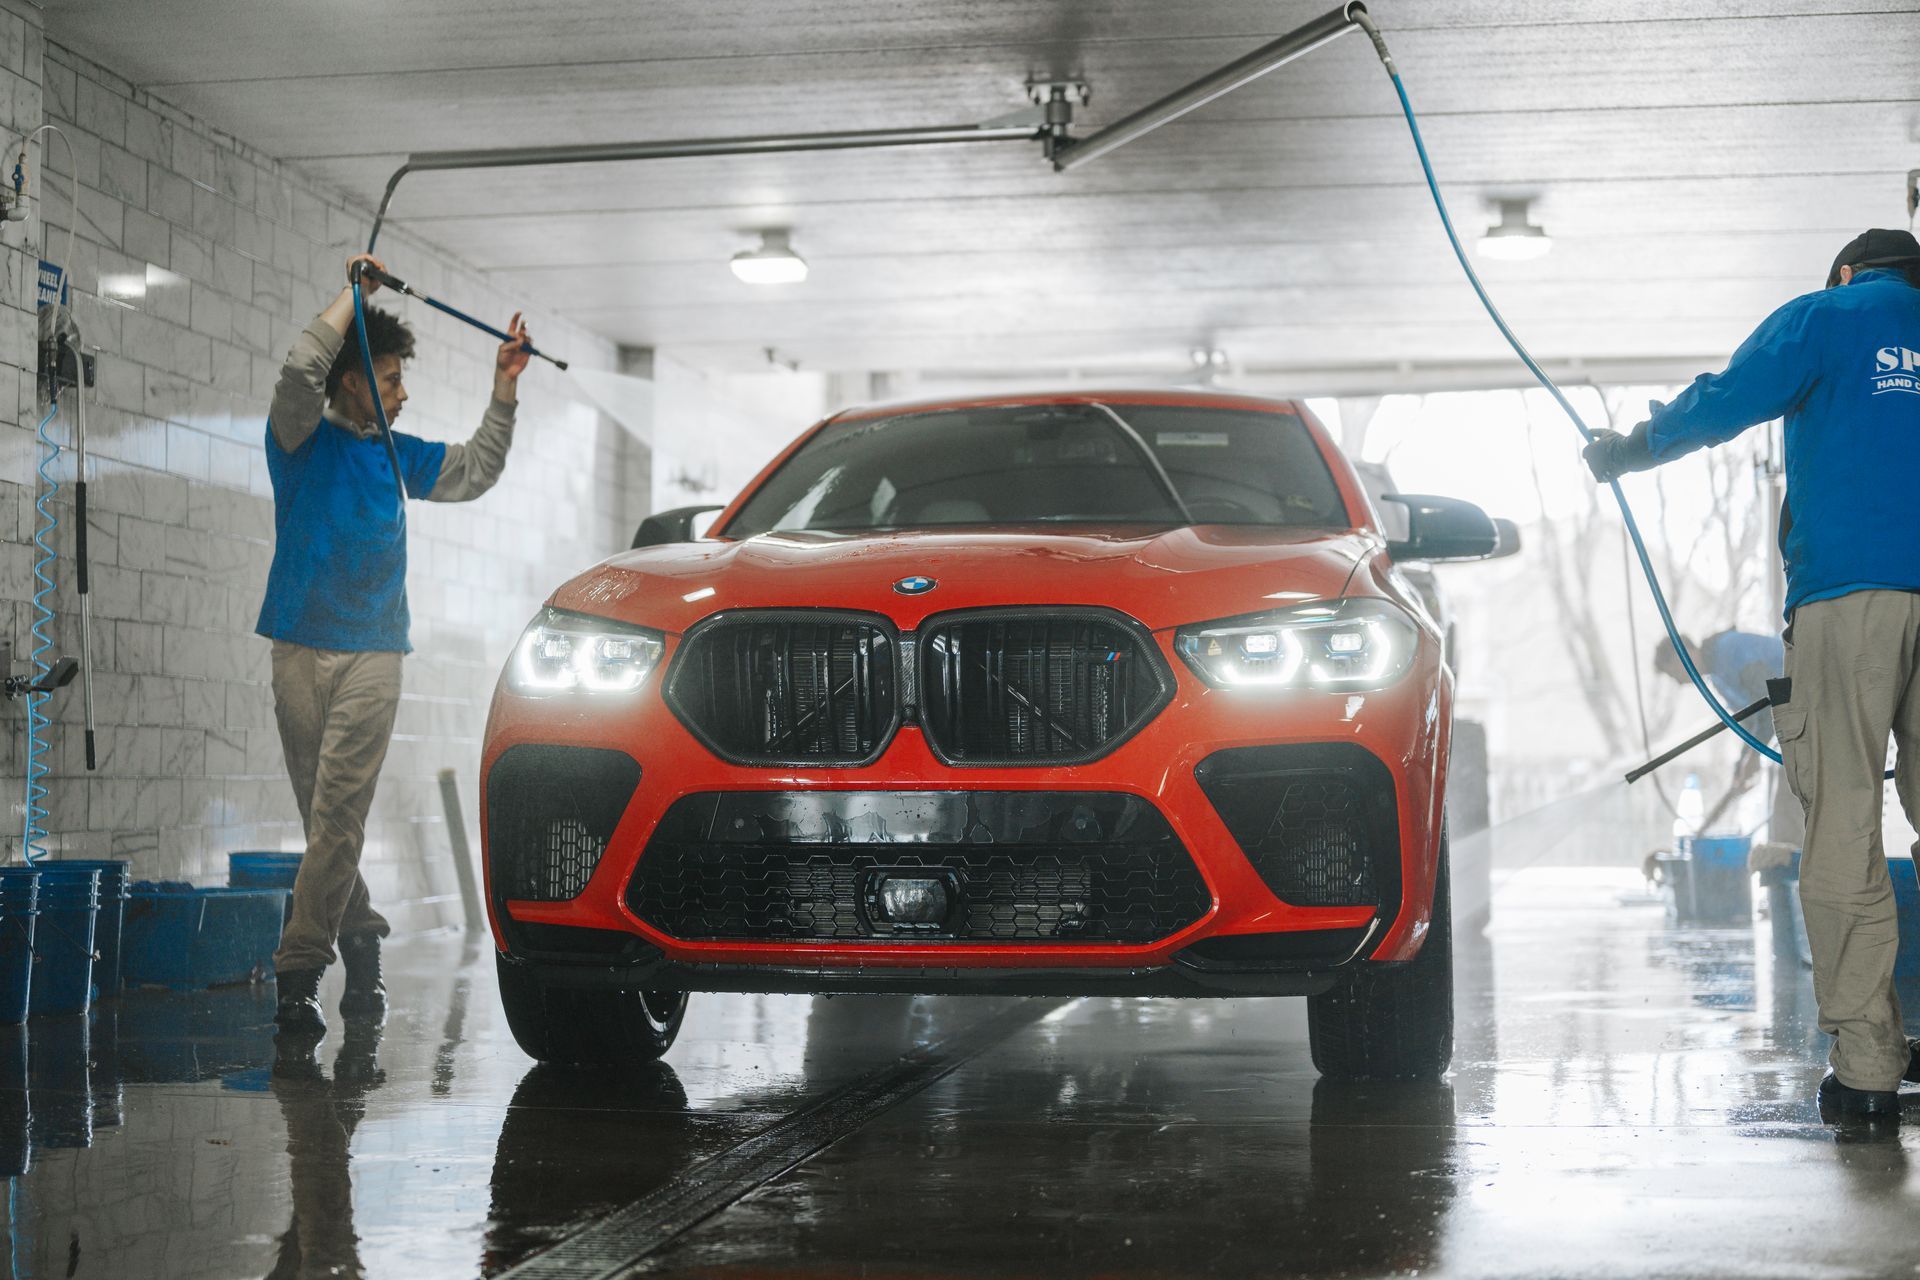 A red bmw x6 m is being washed by two men in a car wash.